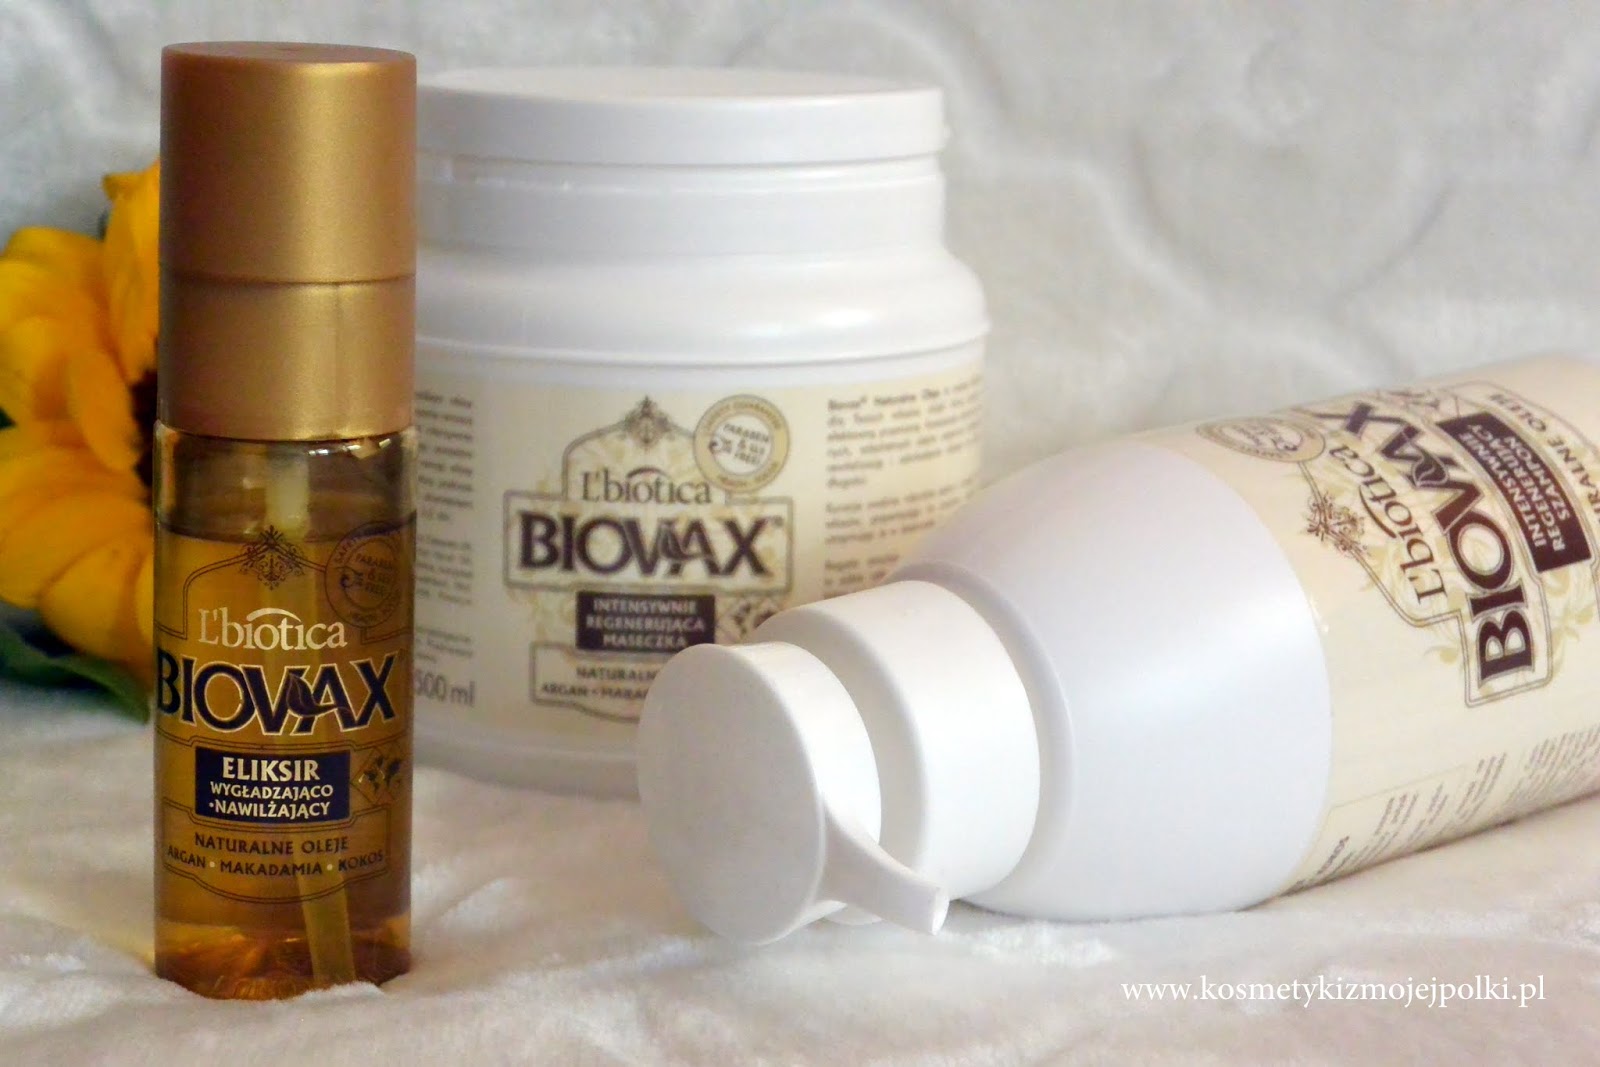 biovax argan makadamia kokos intensywnie regenerujący szampon 400ml